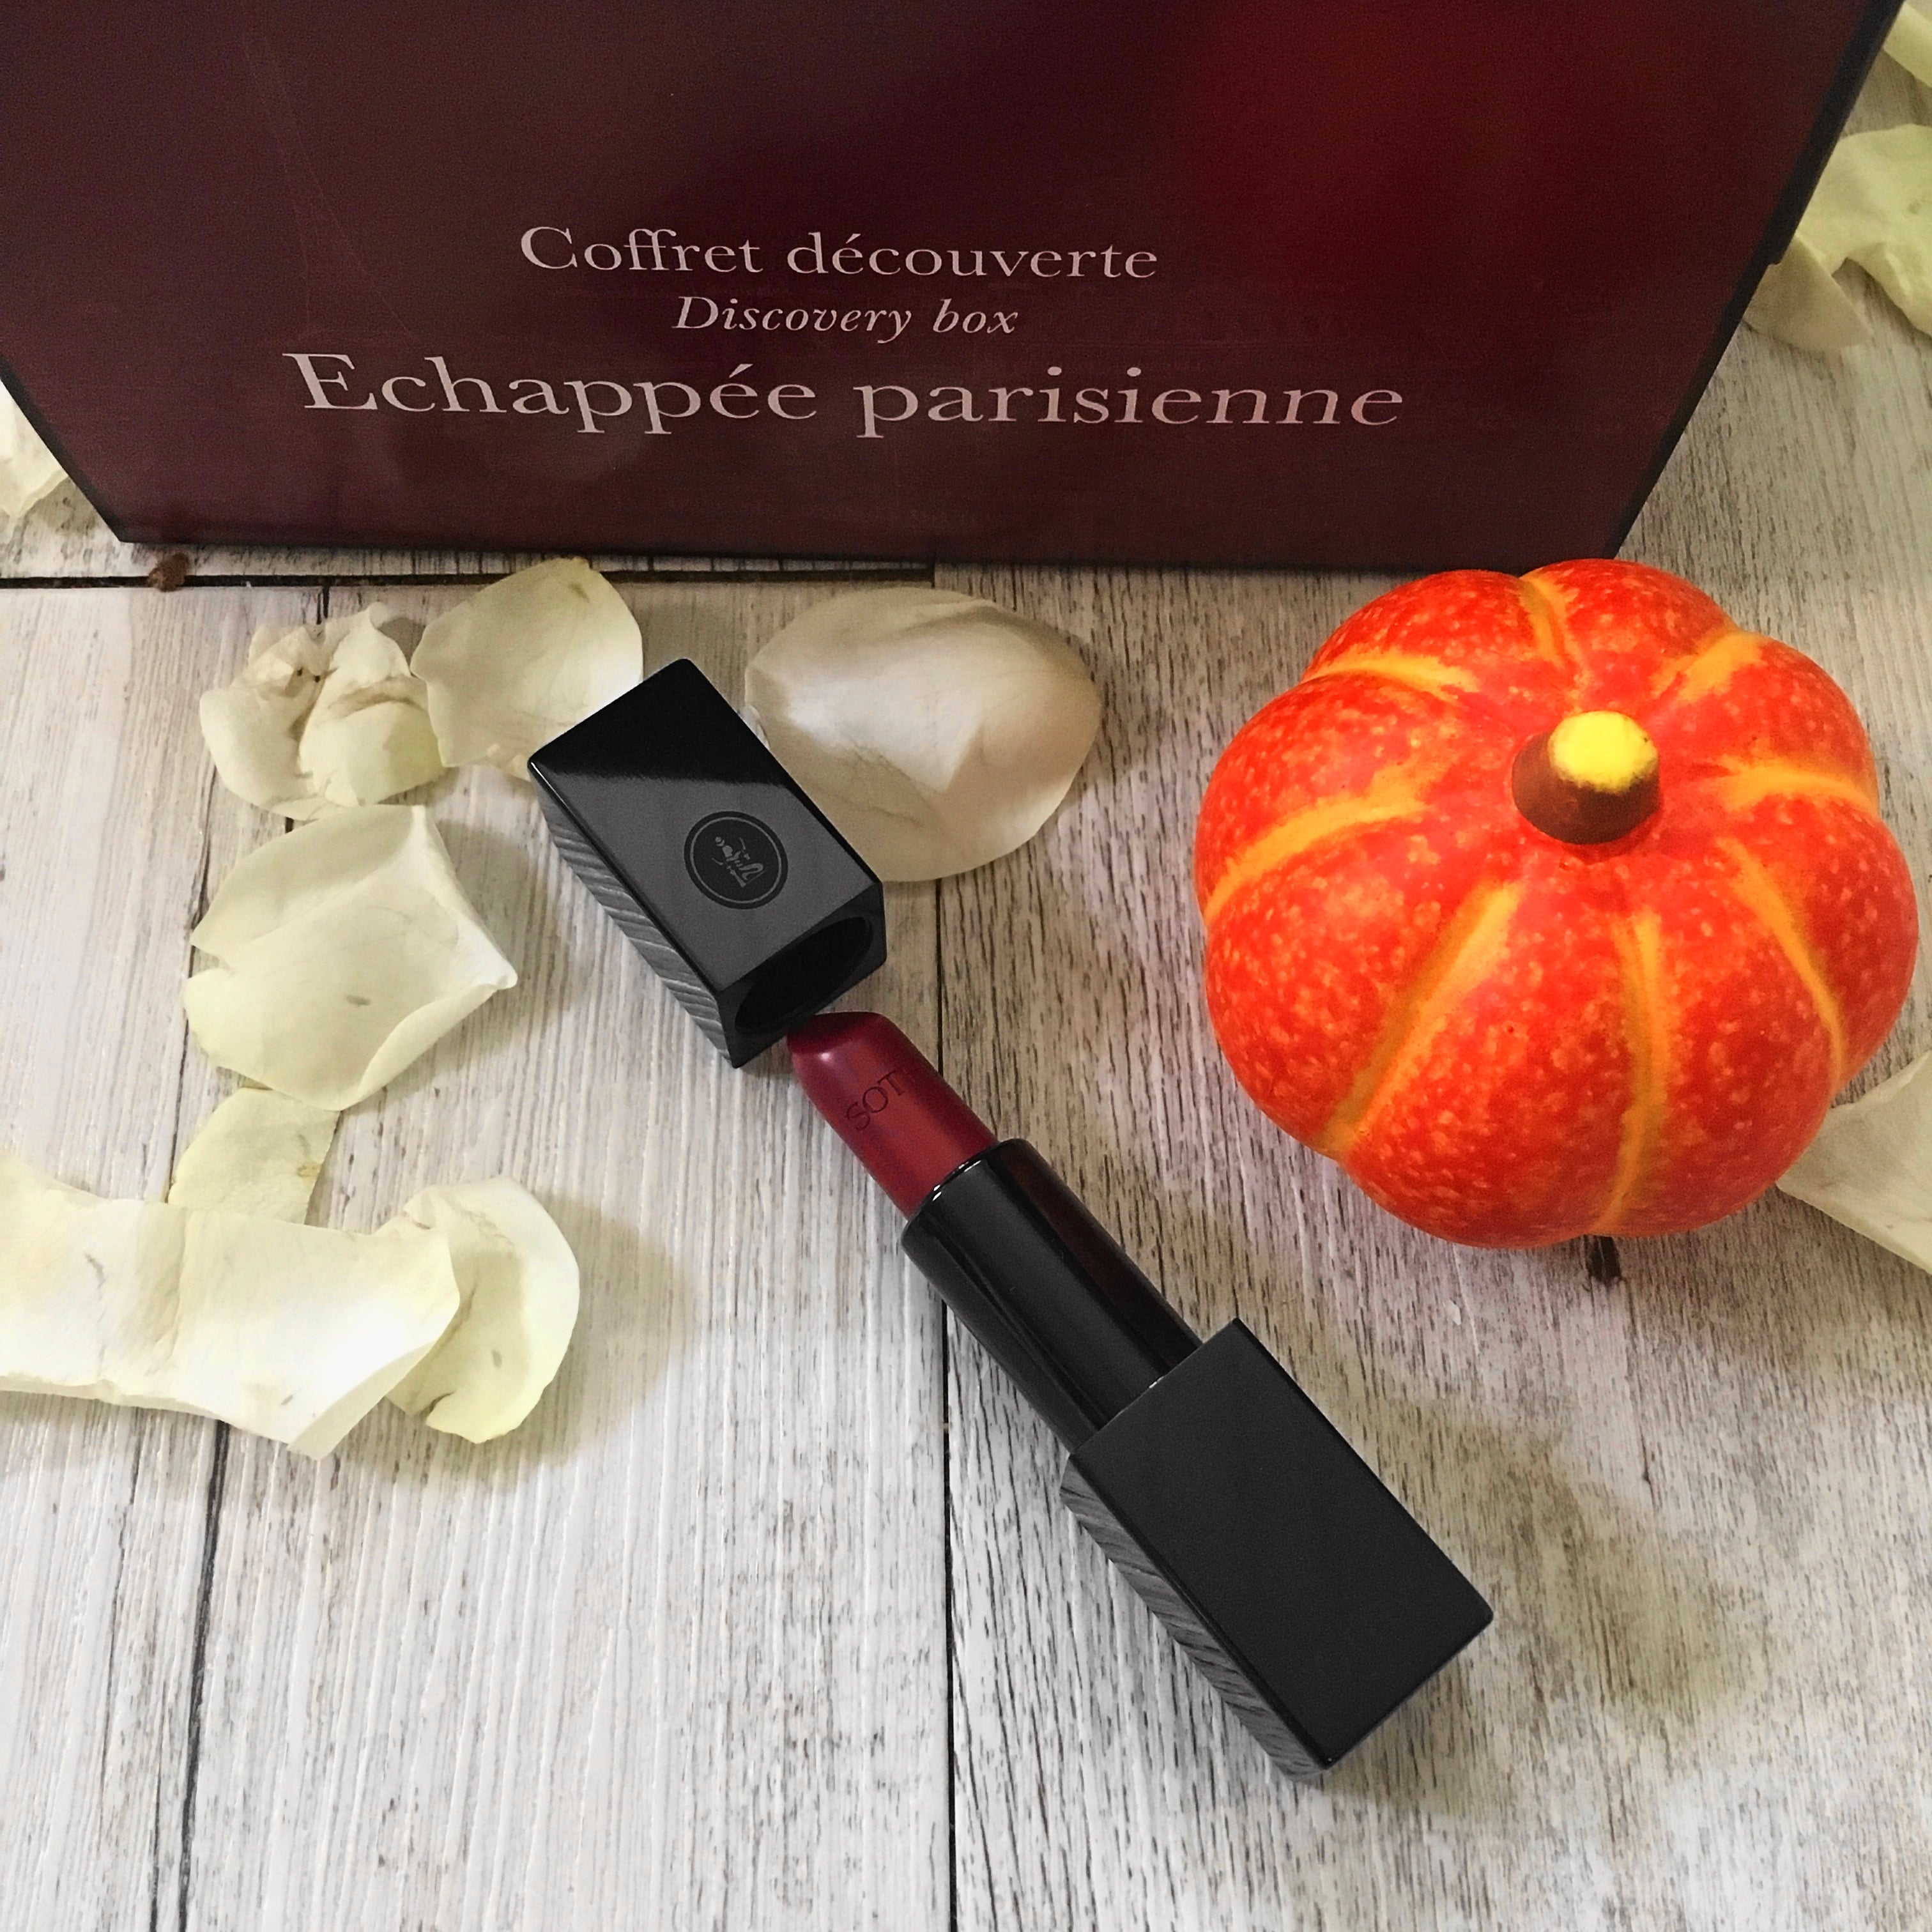 Die seit September erhältliche SOTHYS Discovery Box "Echappée parisienne" enthält tolle dekorative Kosmetik-Produkte für einen schönen Herbst Make Up-Look